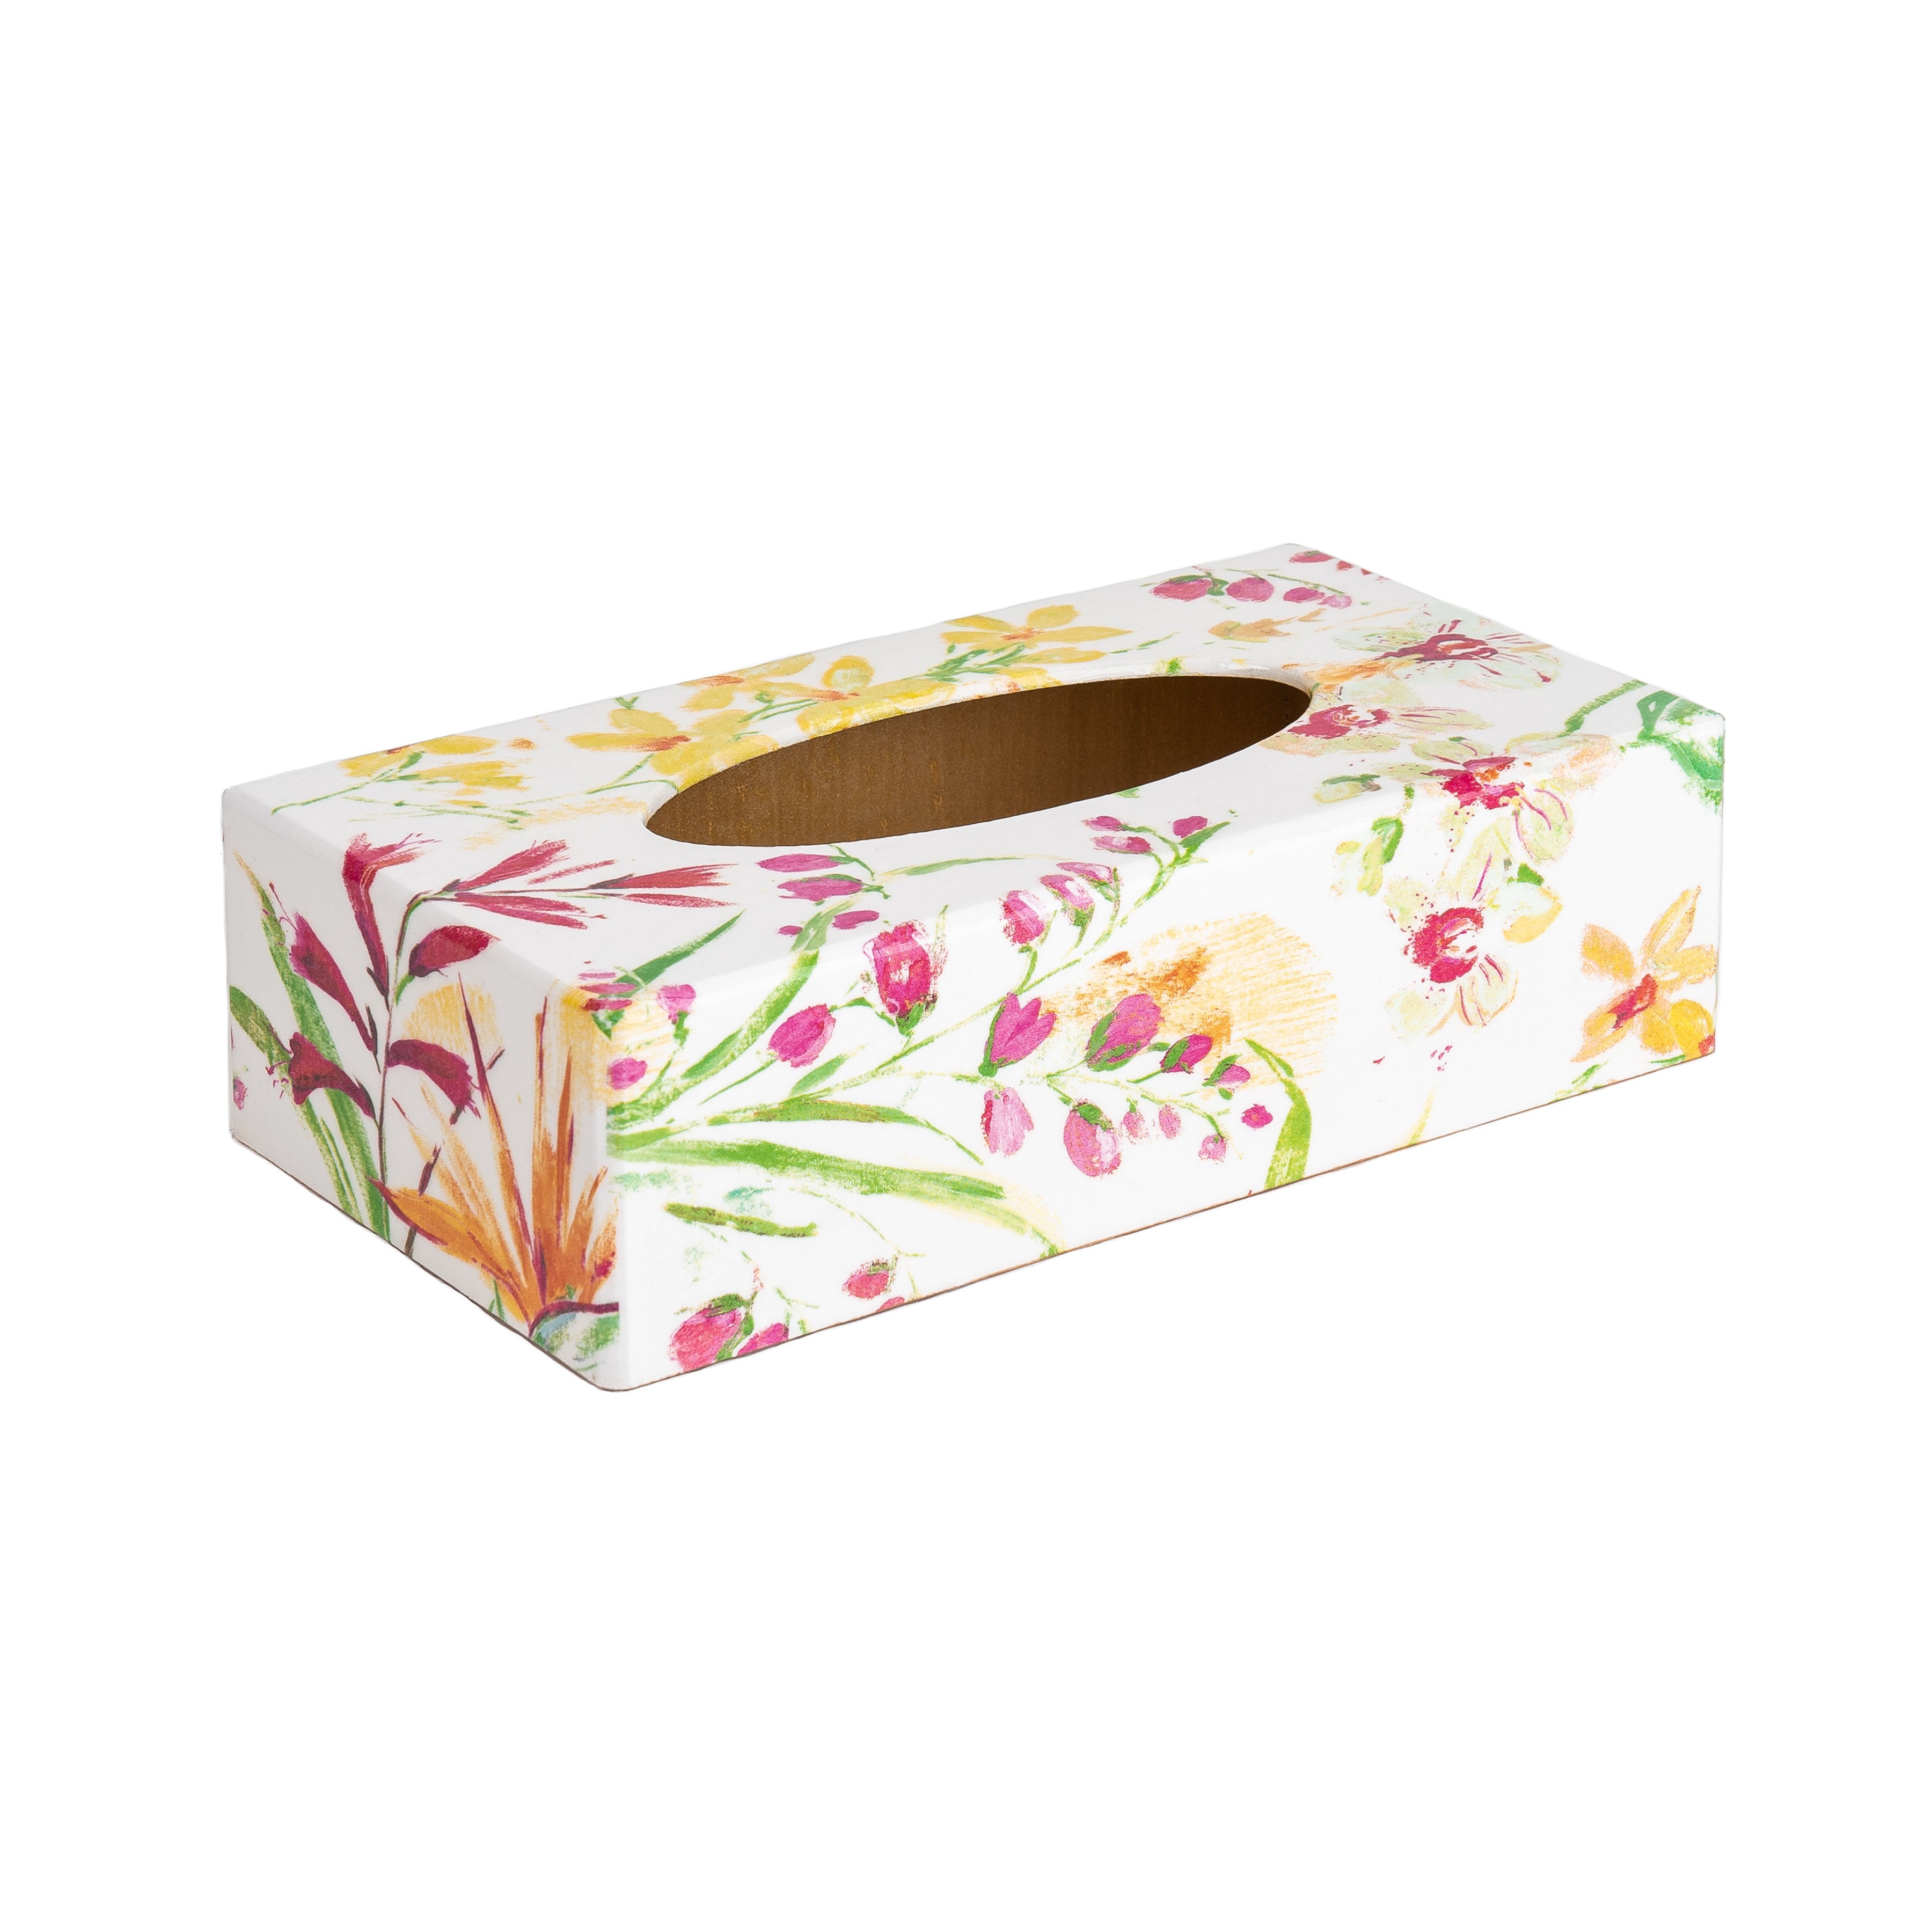 Floral Brushstrokes rectangular tissue box cover